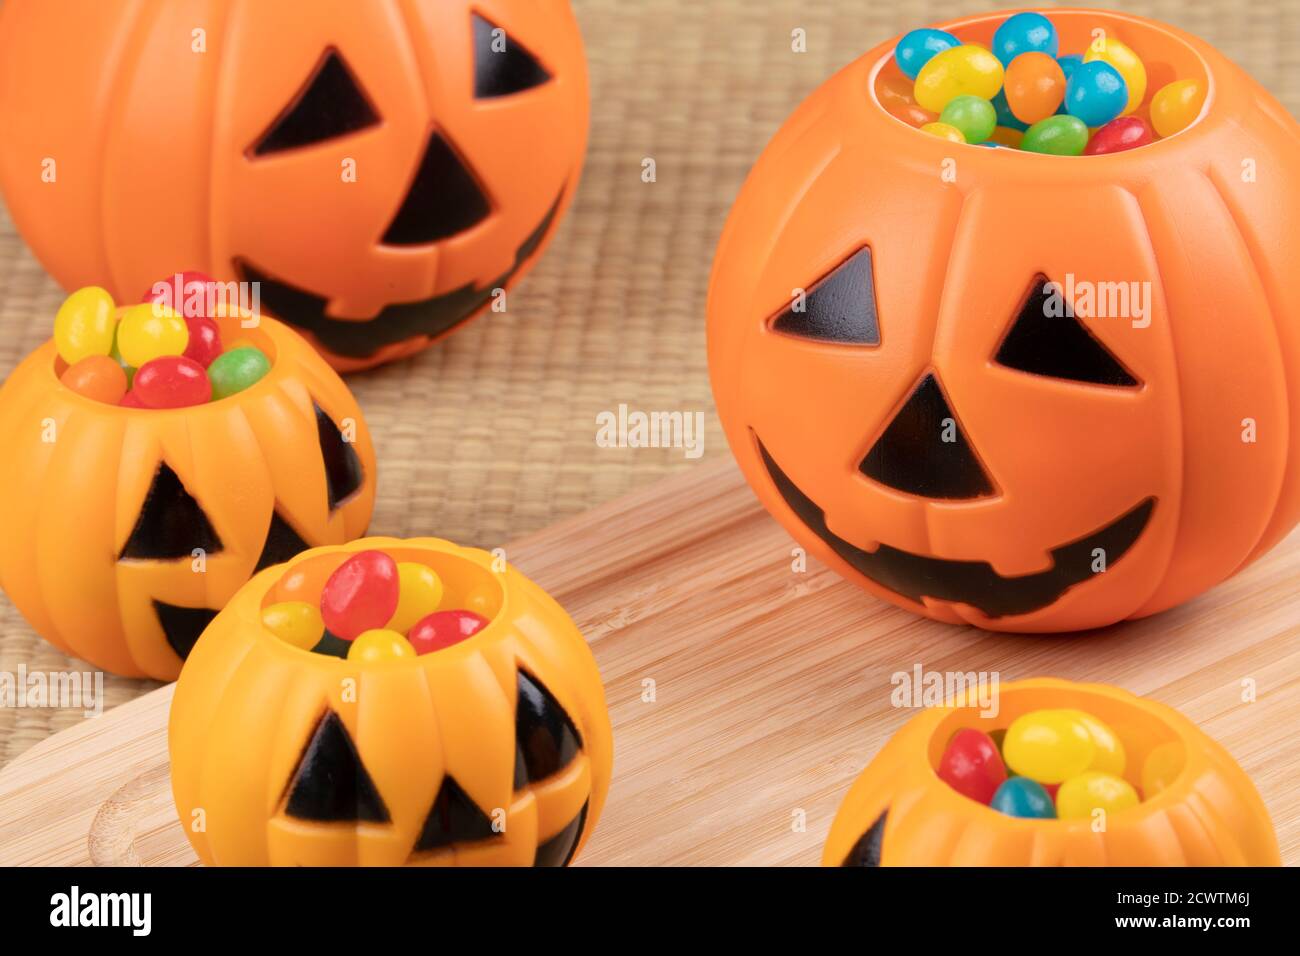 Decoraciones de Halloween usando pumkins de plástico y frijoles de gelatina en un fondo de madera Foto de stock